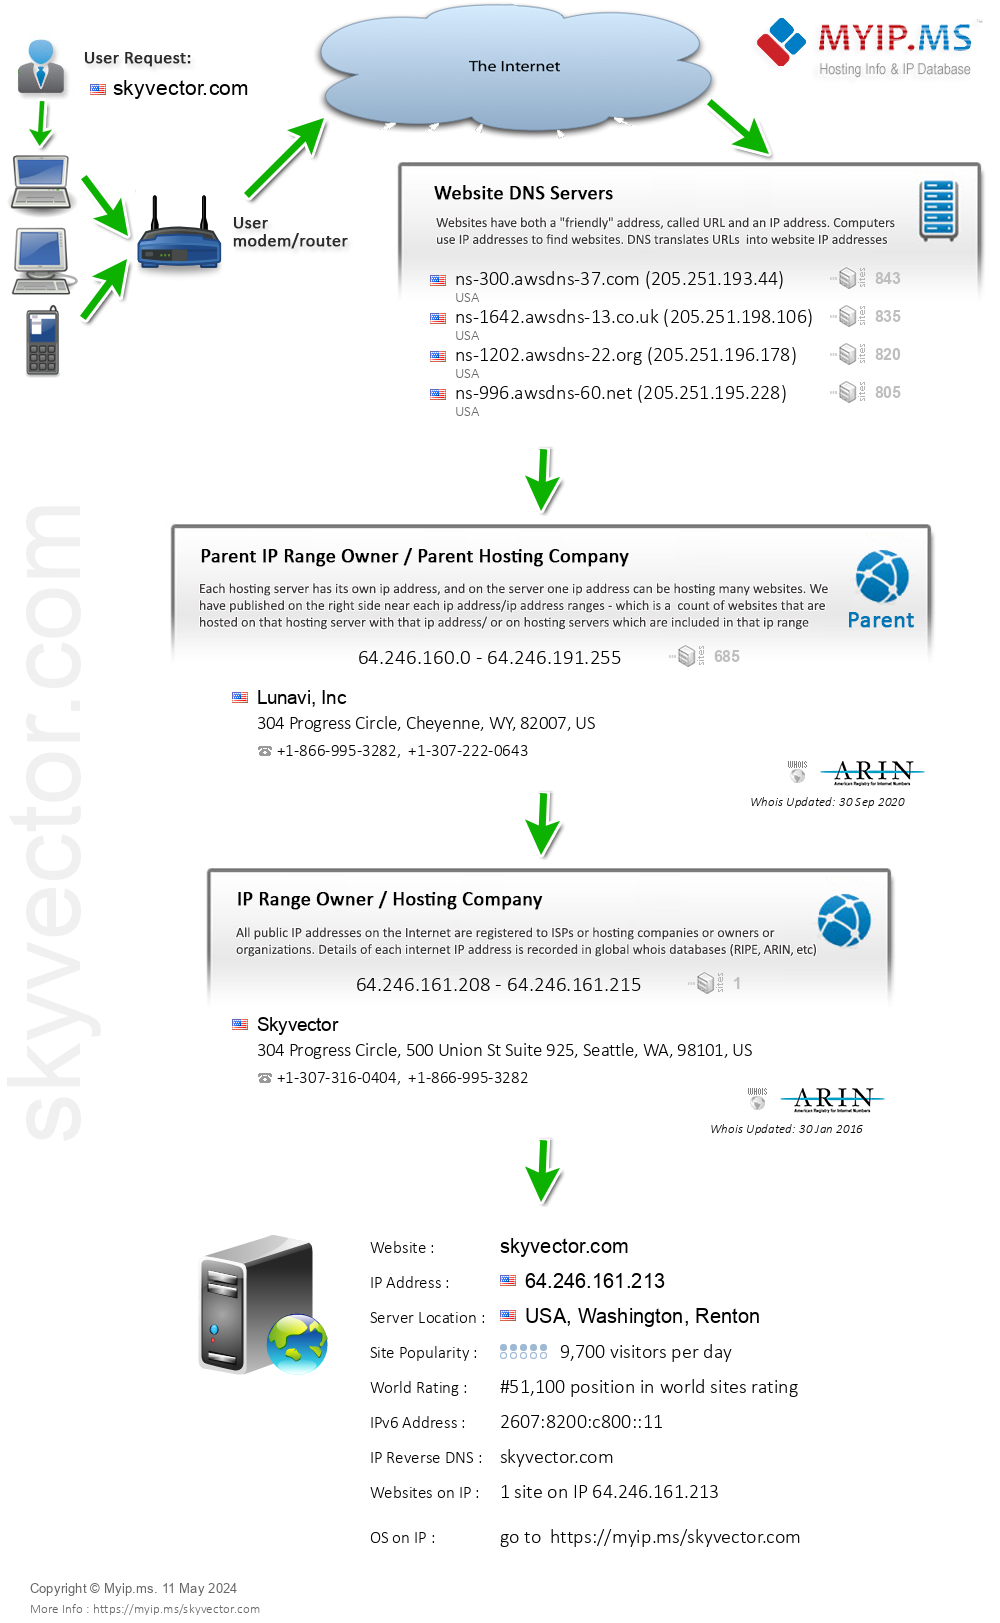 Skyvector.com - Website Hosting Visual IP Diagram